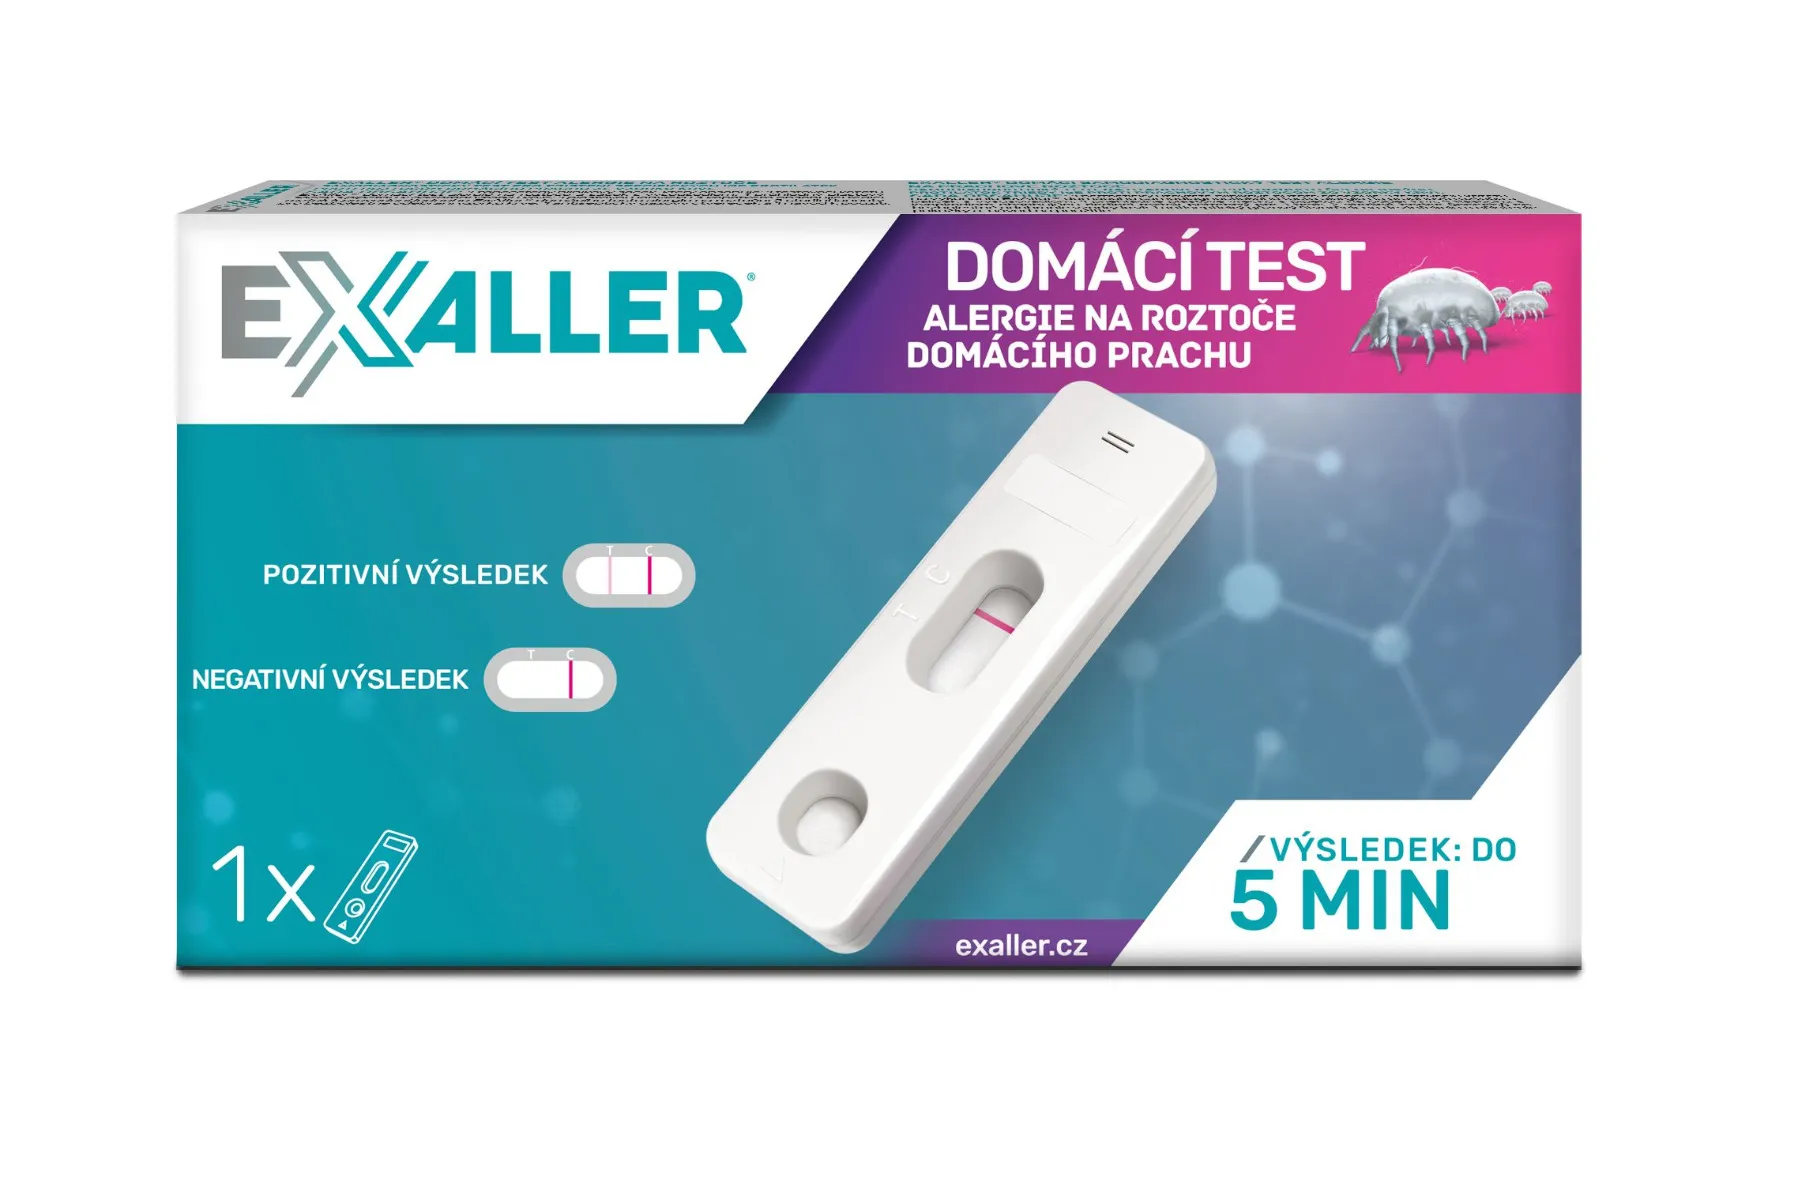 ExAller Domácí test alergie na roztoče domácího prachu